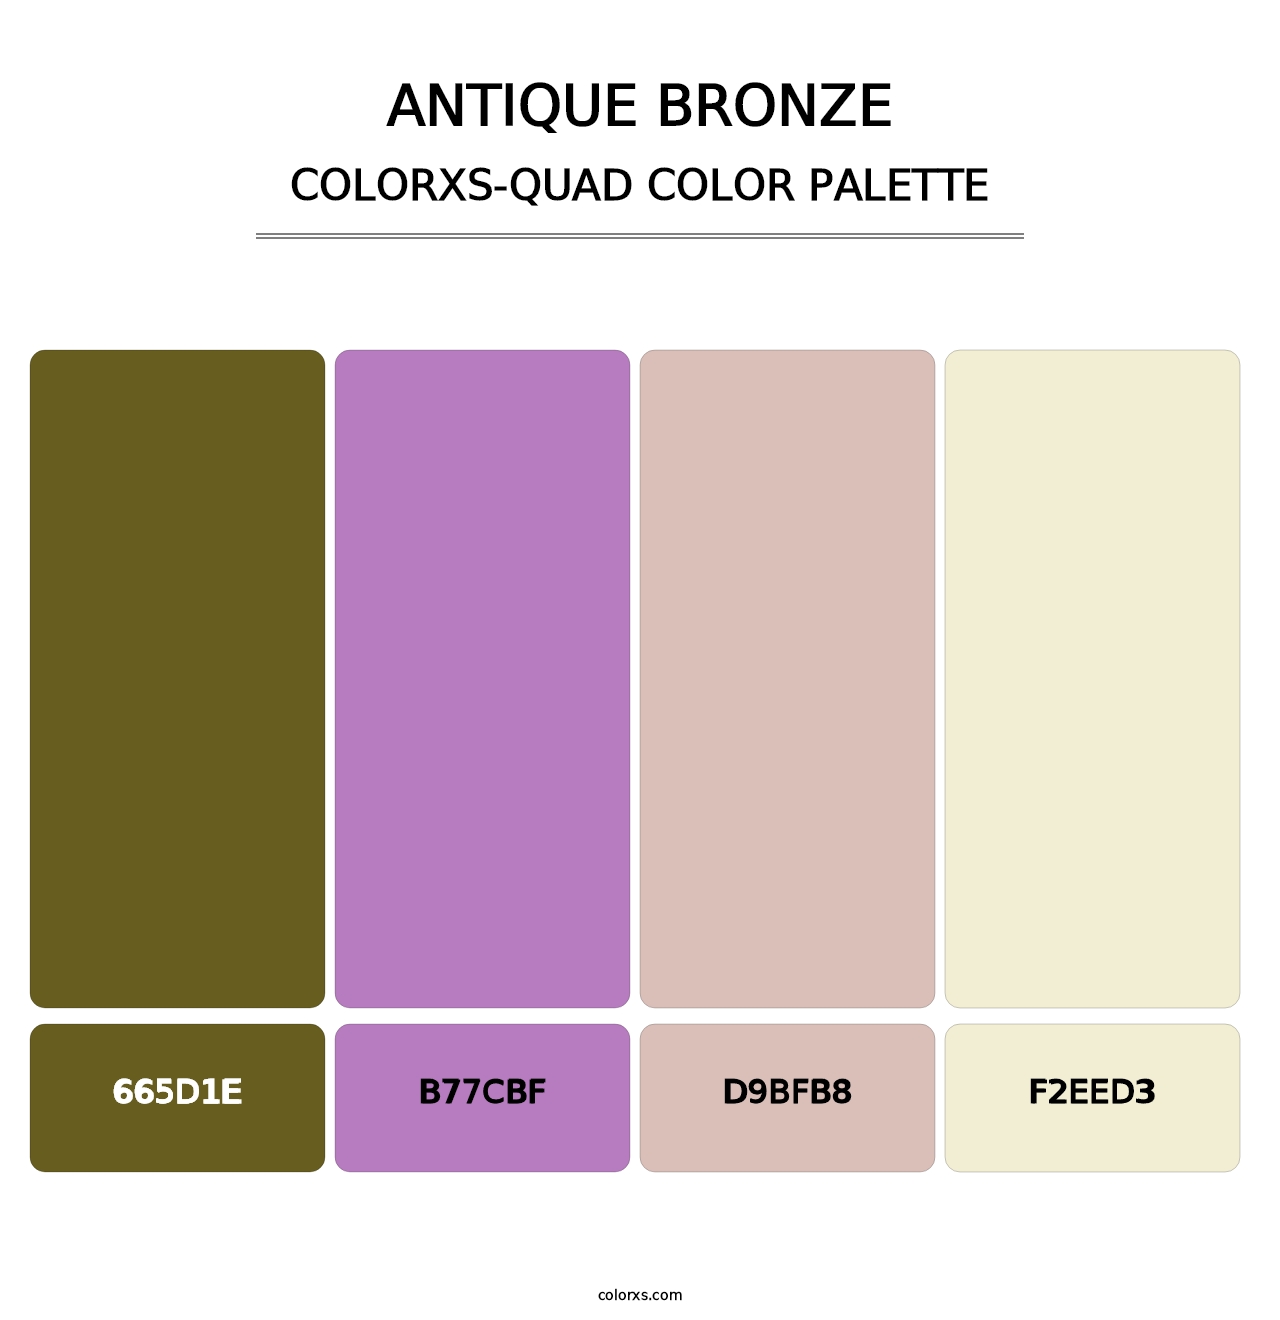 Antique Bronze - Colorxs Quad Palette